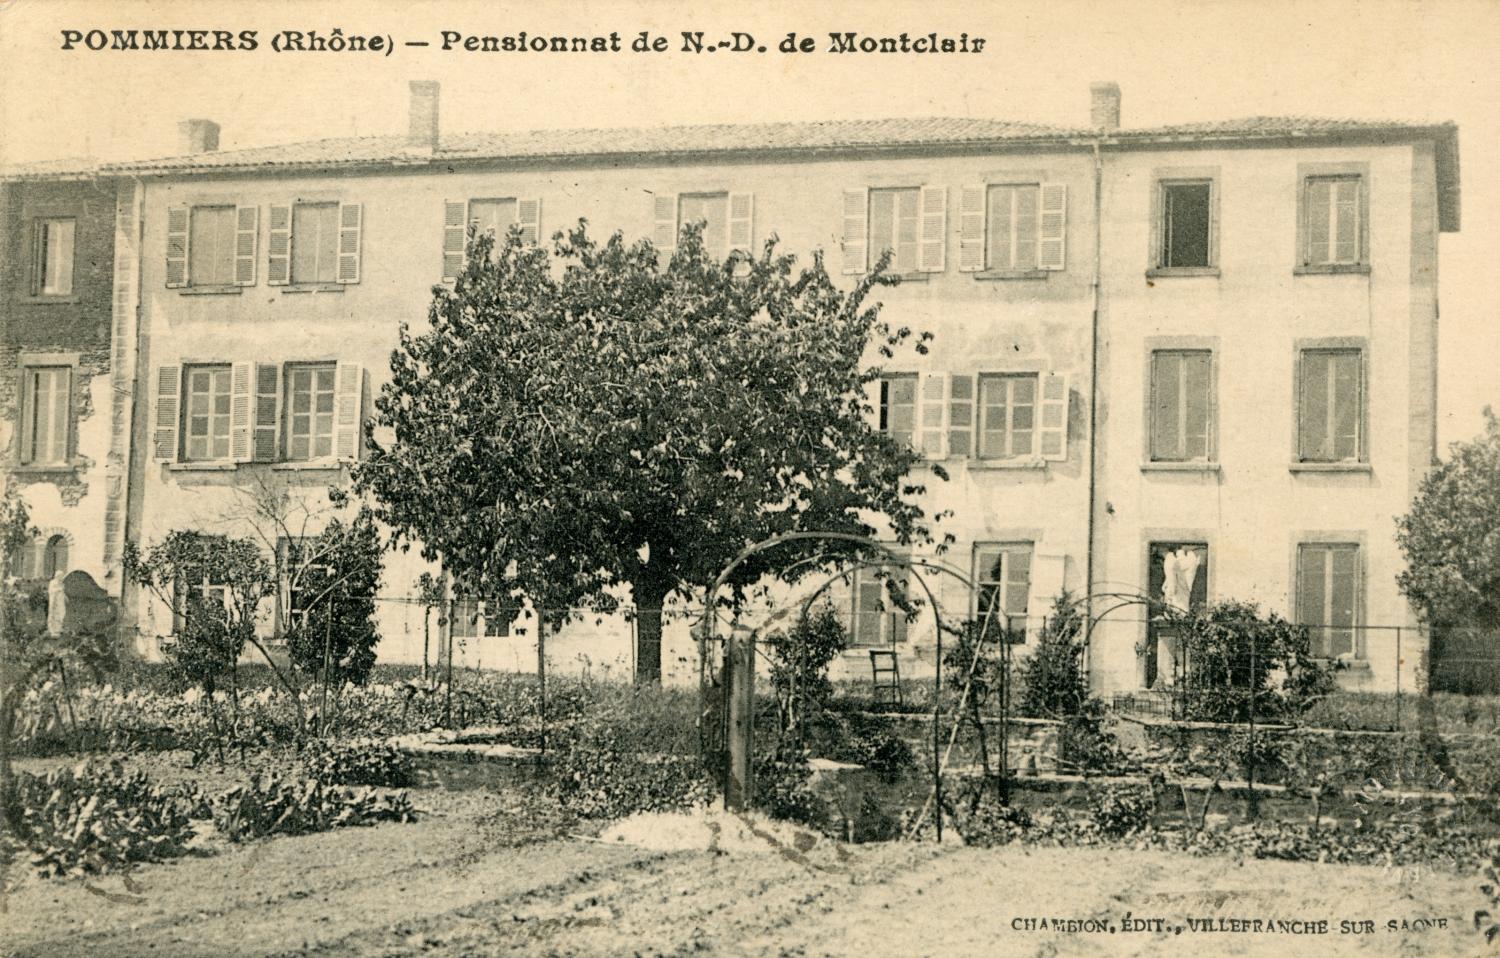 Pommiers (Rhône). - Pensionnat de N.-D. de Montclair